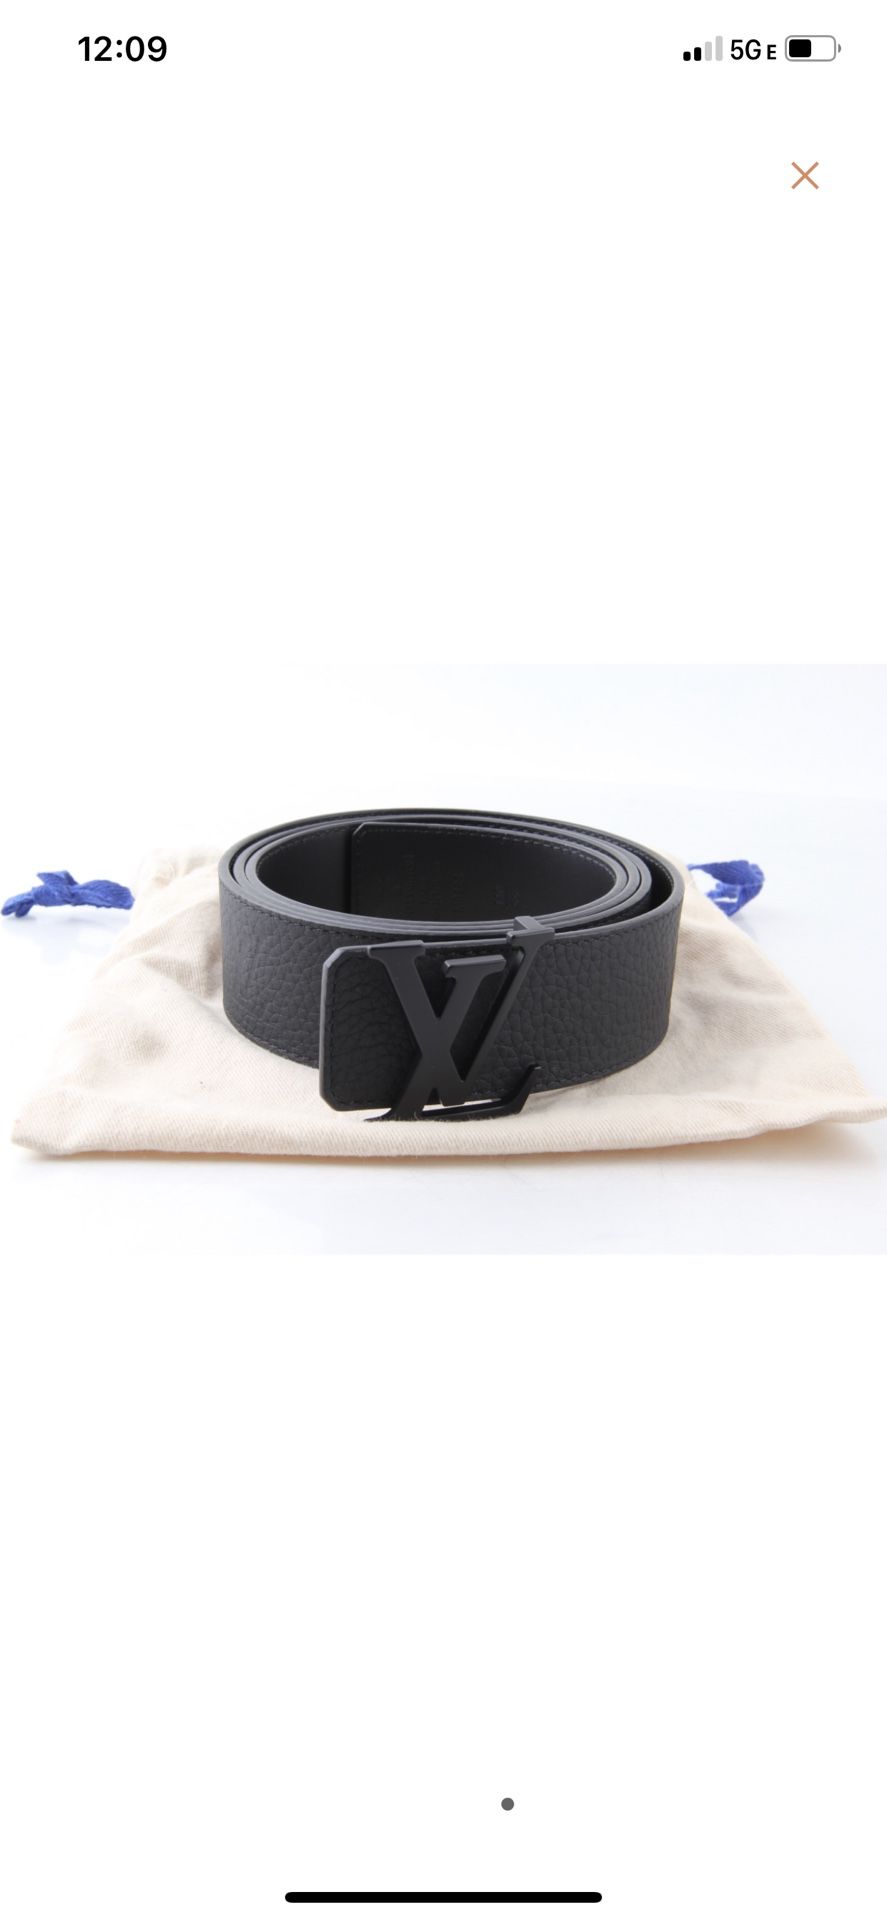 Louis Vuitton LV Initiales 40mm Reversible Belt Black Grey Leather. Size 110 cm